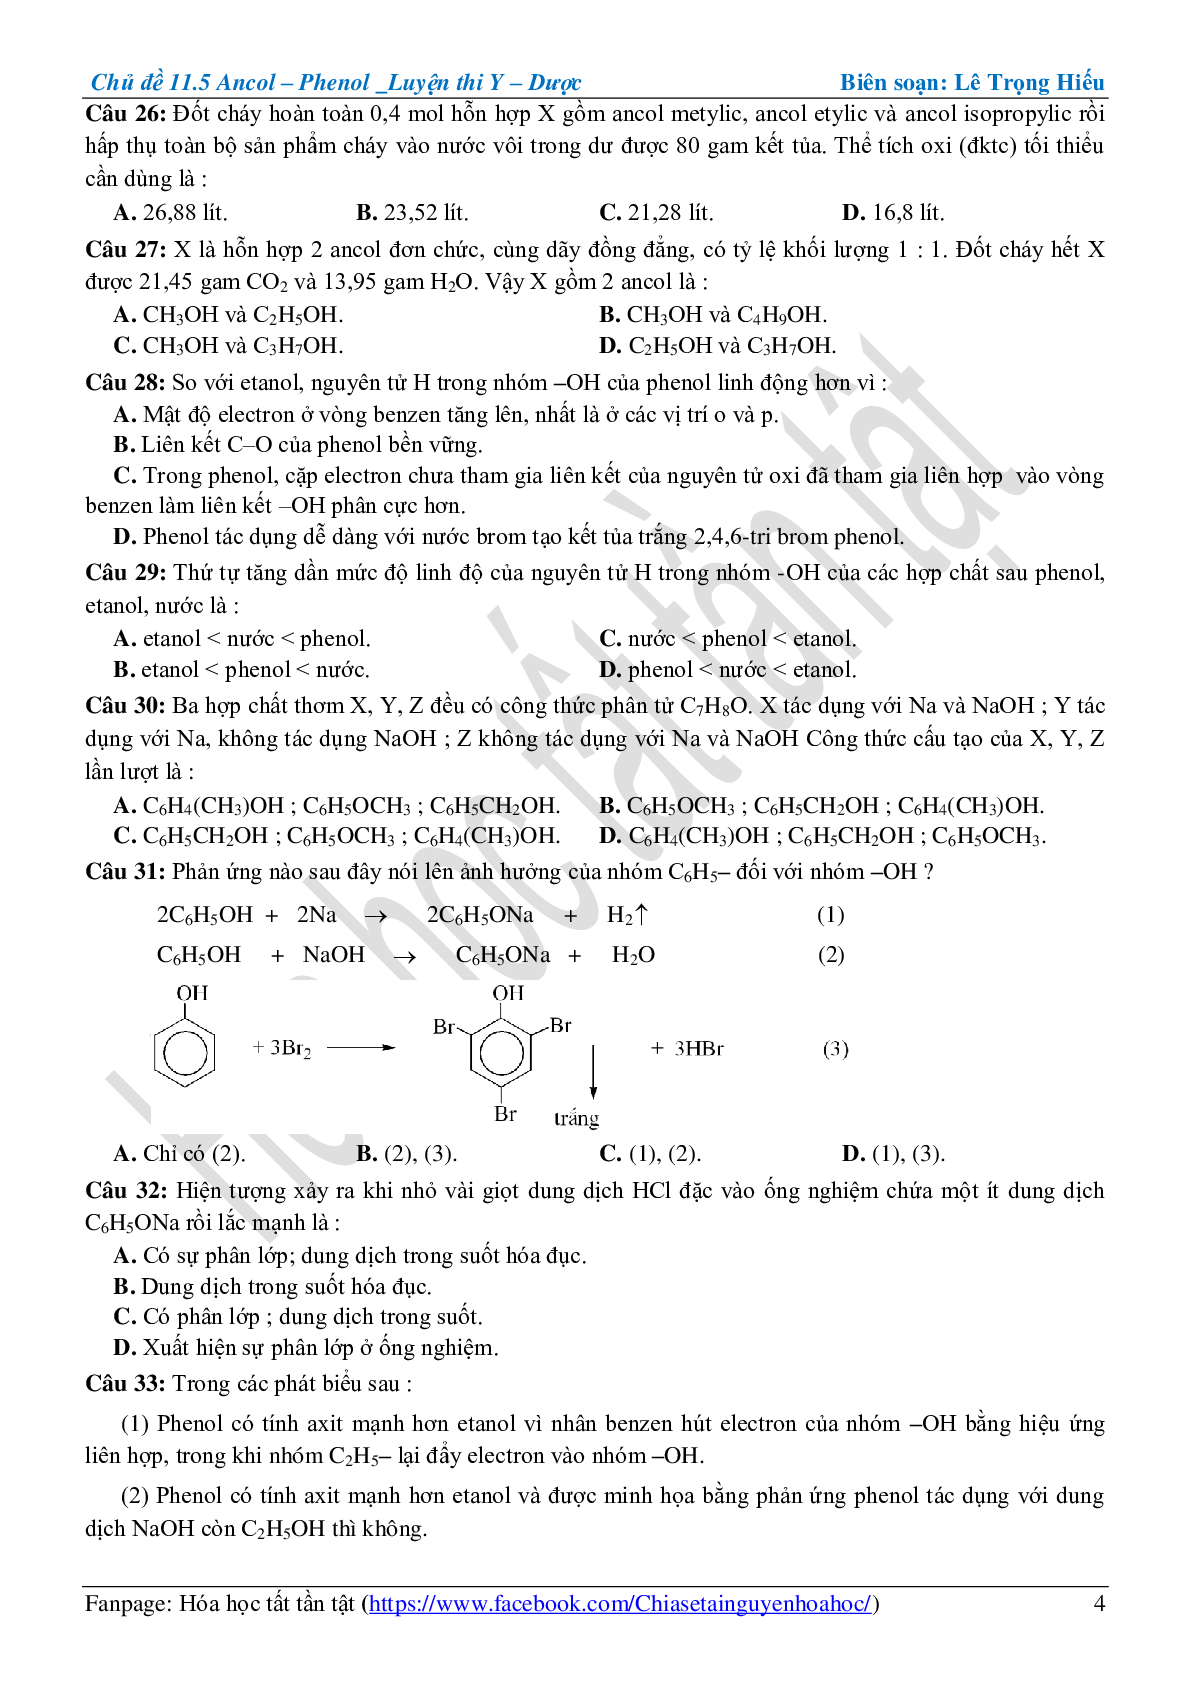 Bài tập về ancol-phenol cơ bản, nâng cao (trang 4)